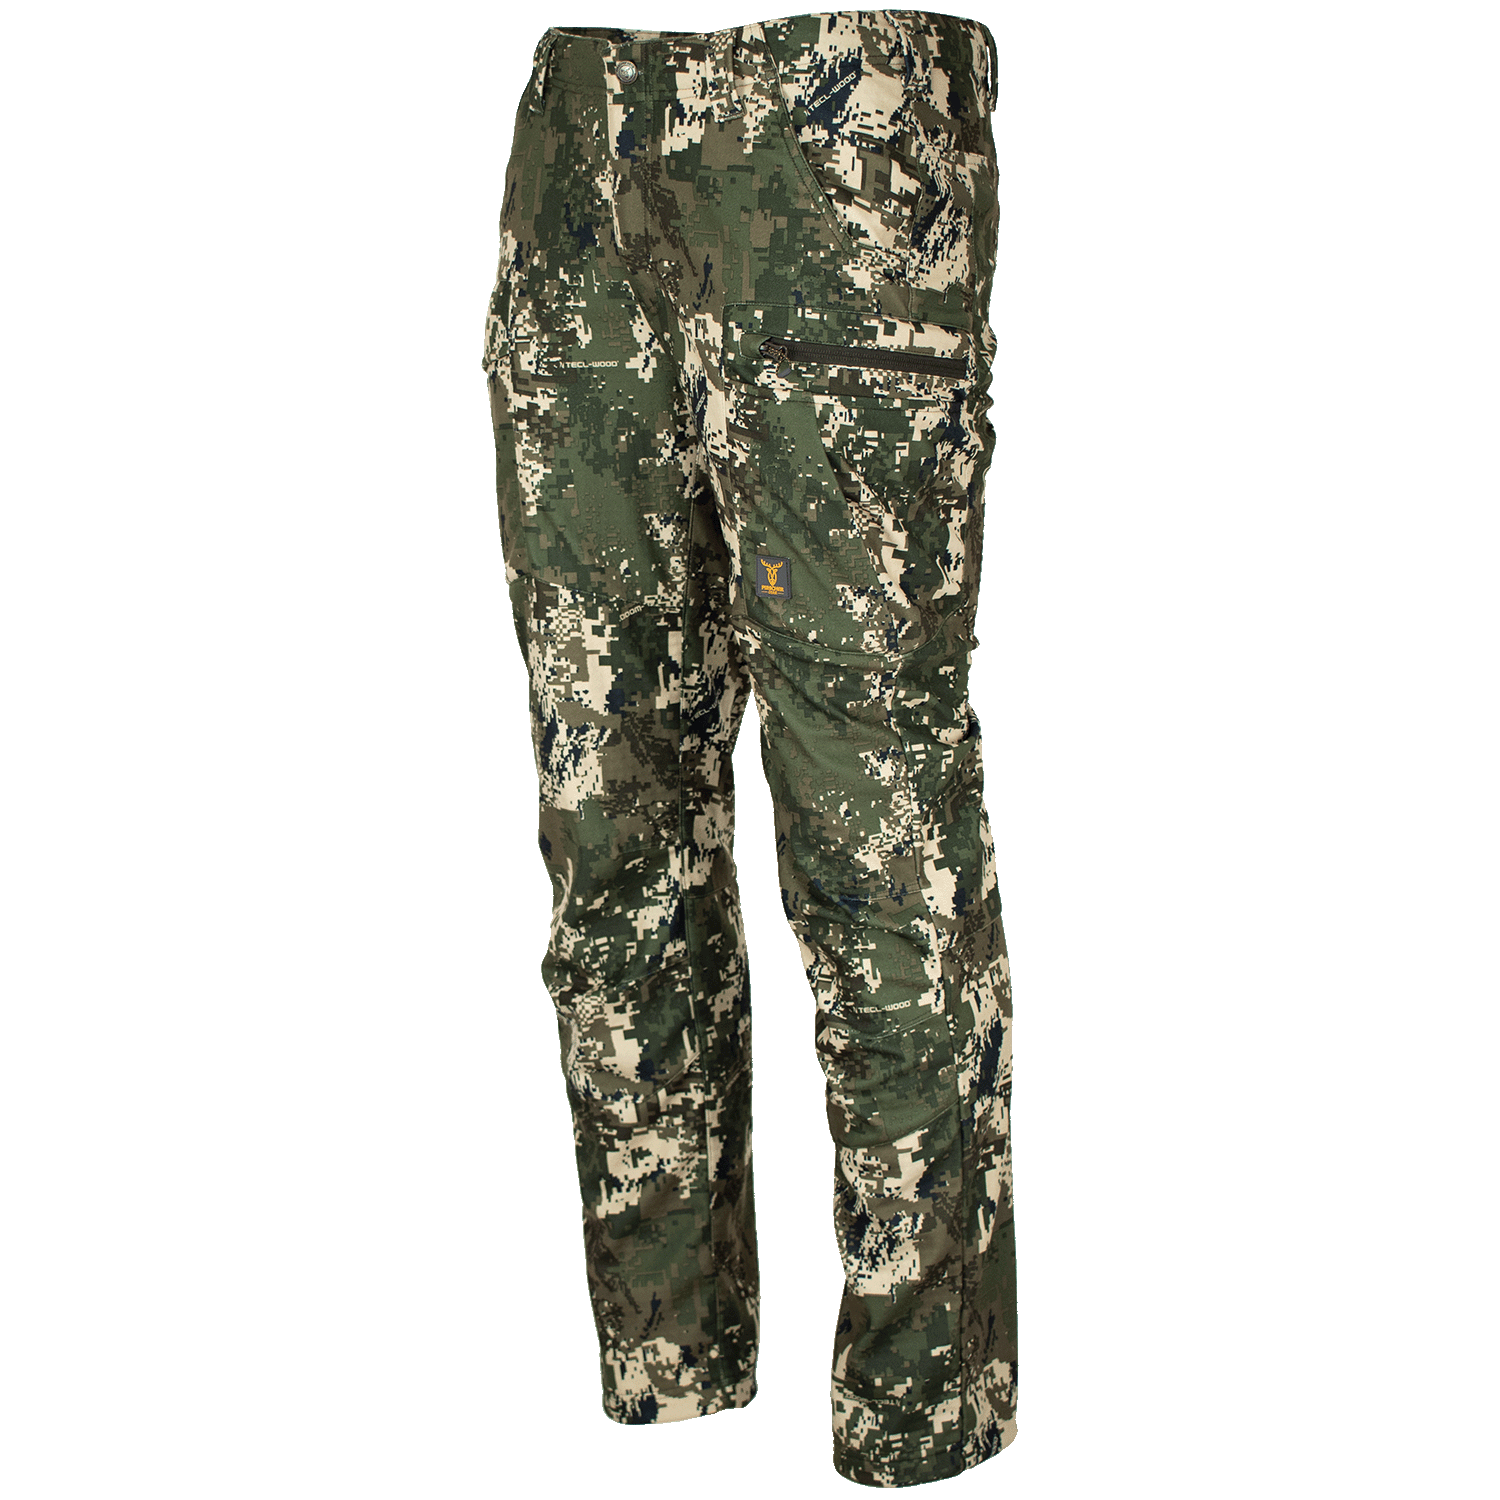  Pirscher Gear Silence Pro broek (Optimax) - Camouflage Kleding